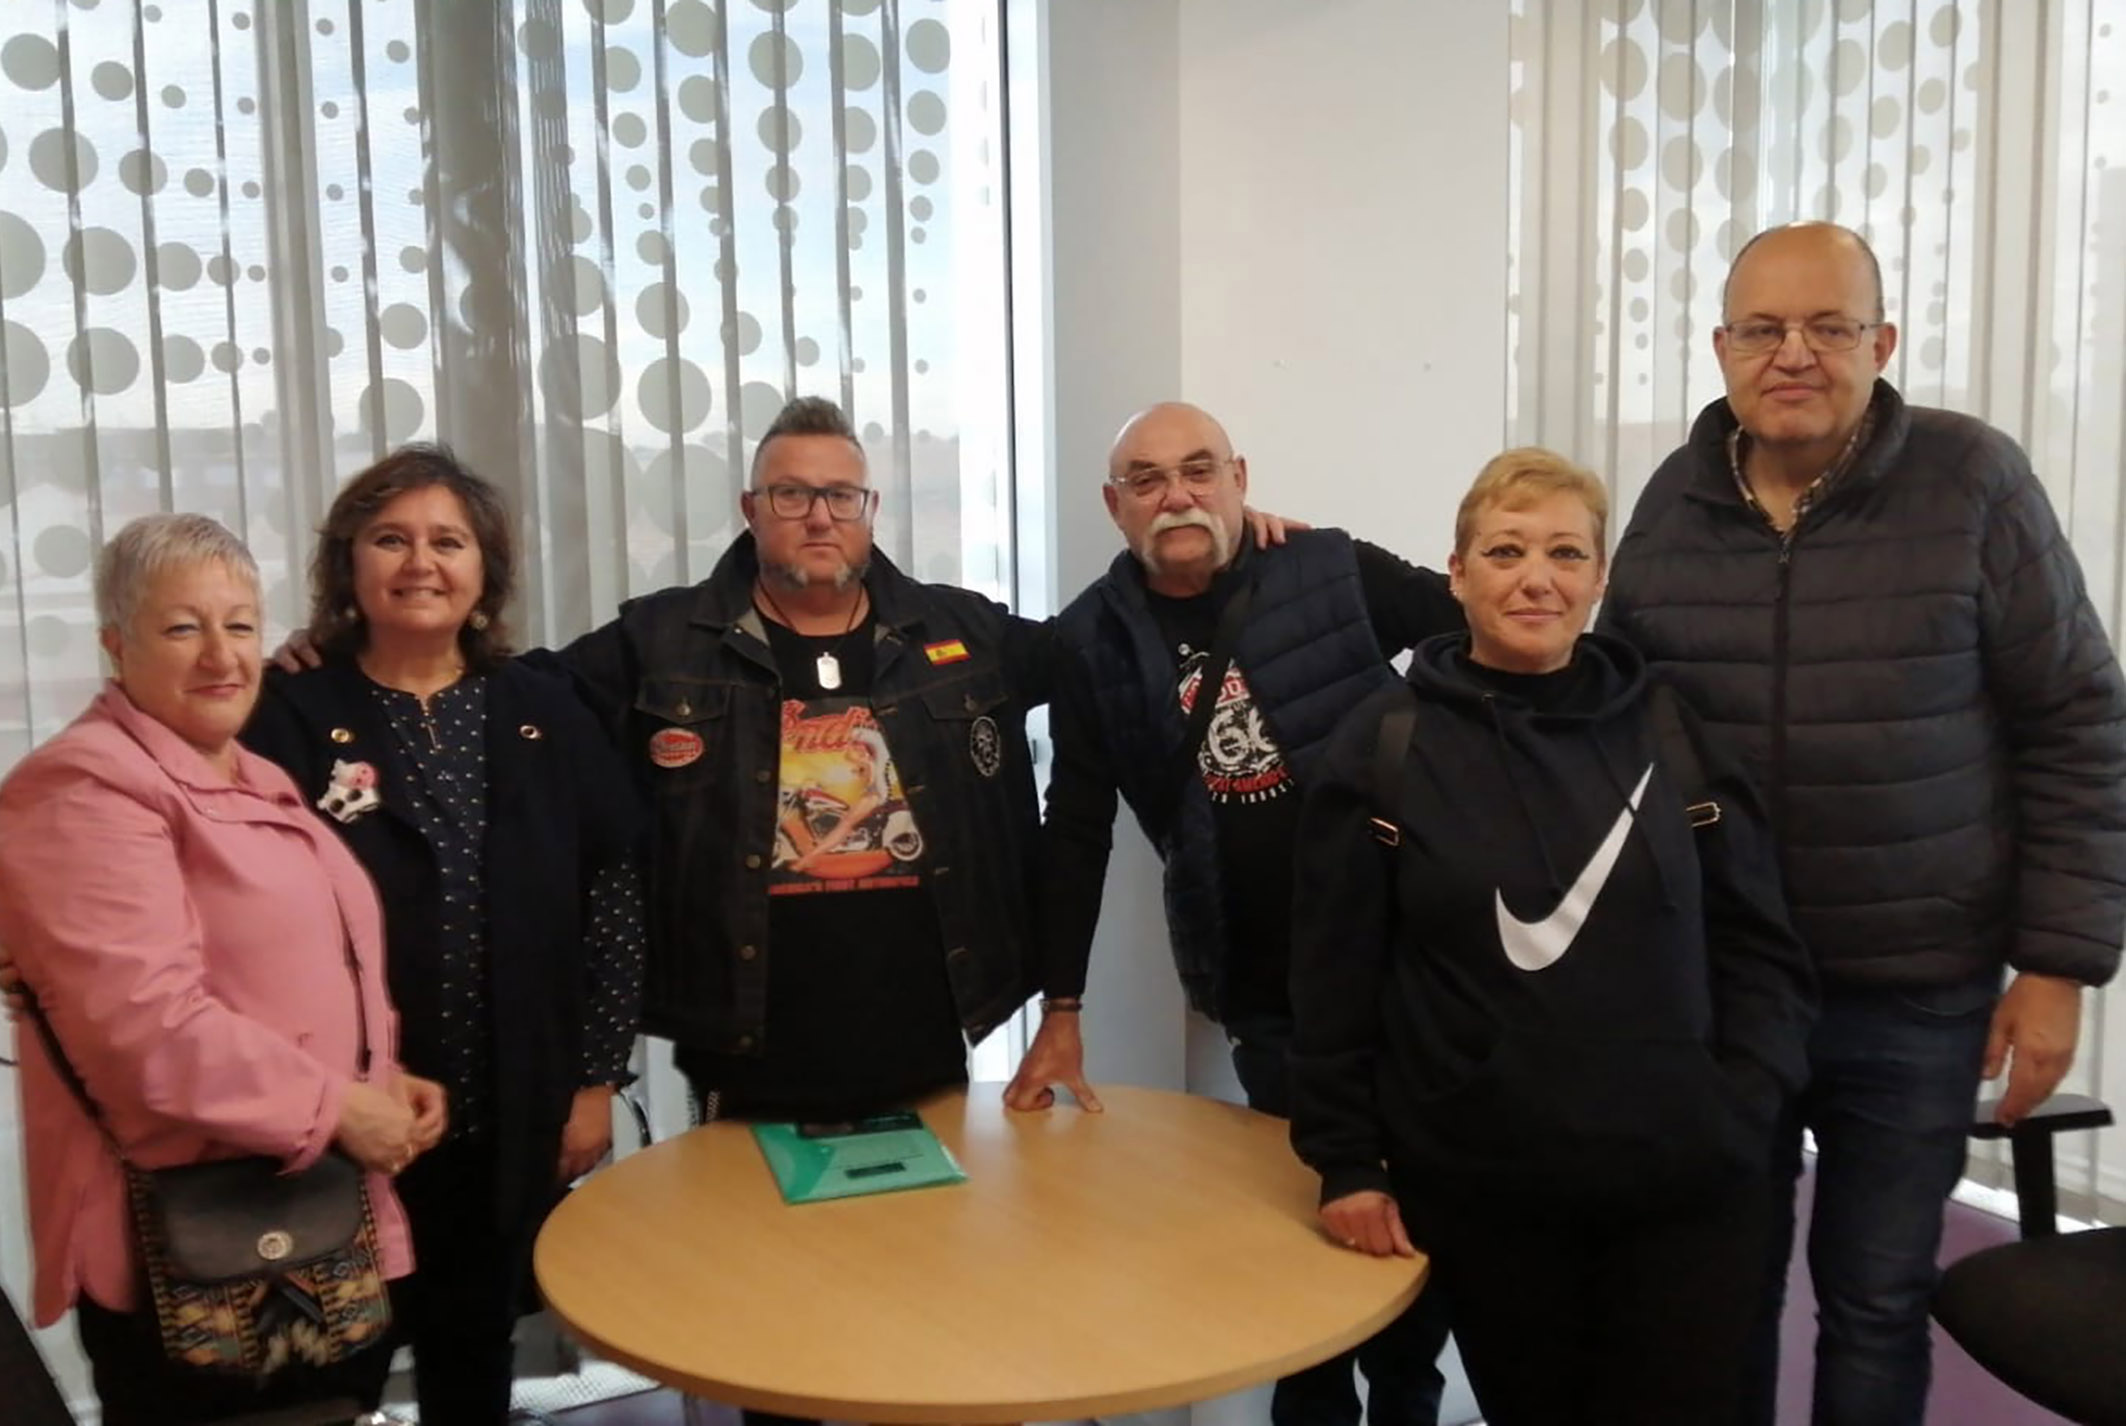 La agrupación motorista "Moteros Solidarios Murcia" realizará una recogida solidaria en Las Torres de Cotillas